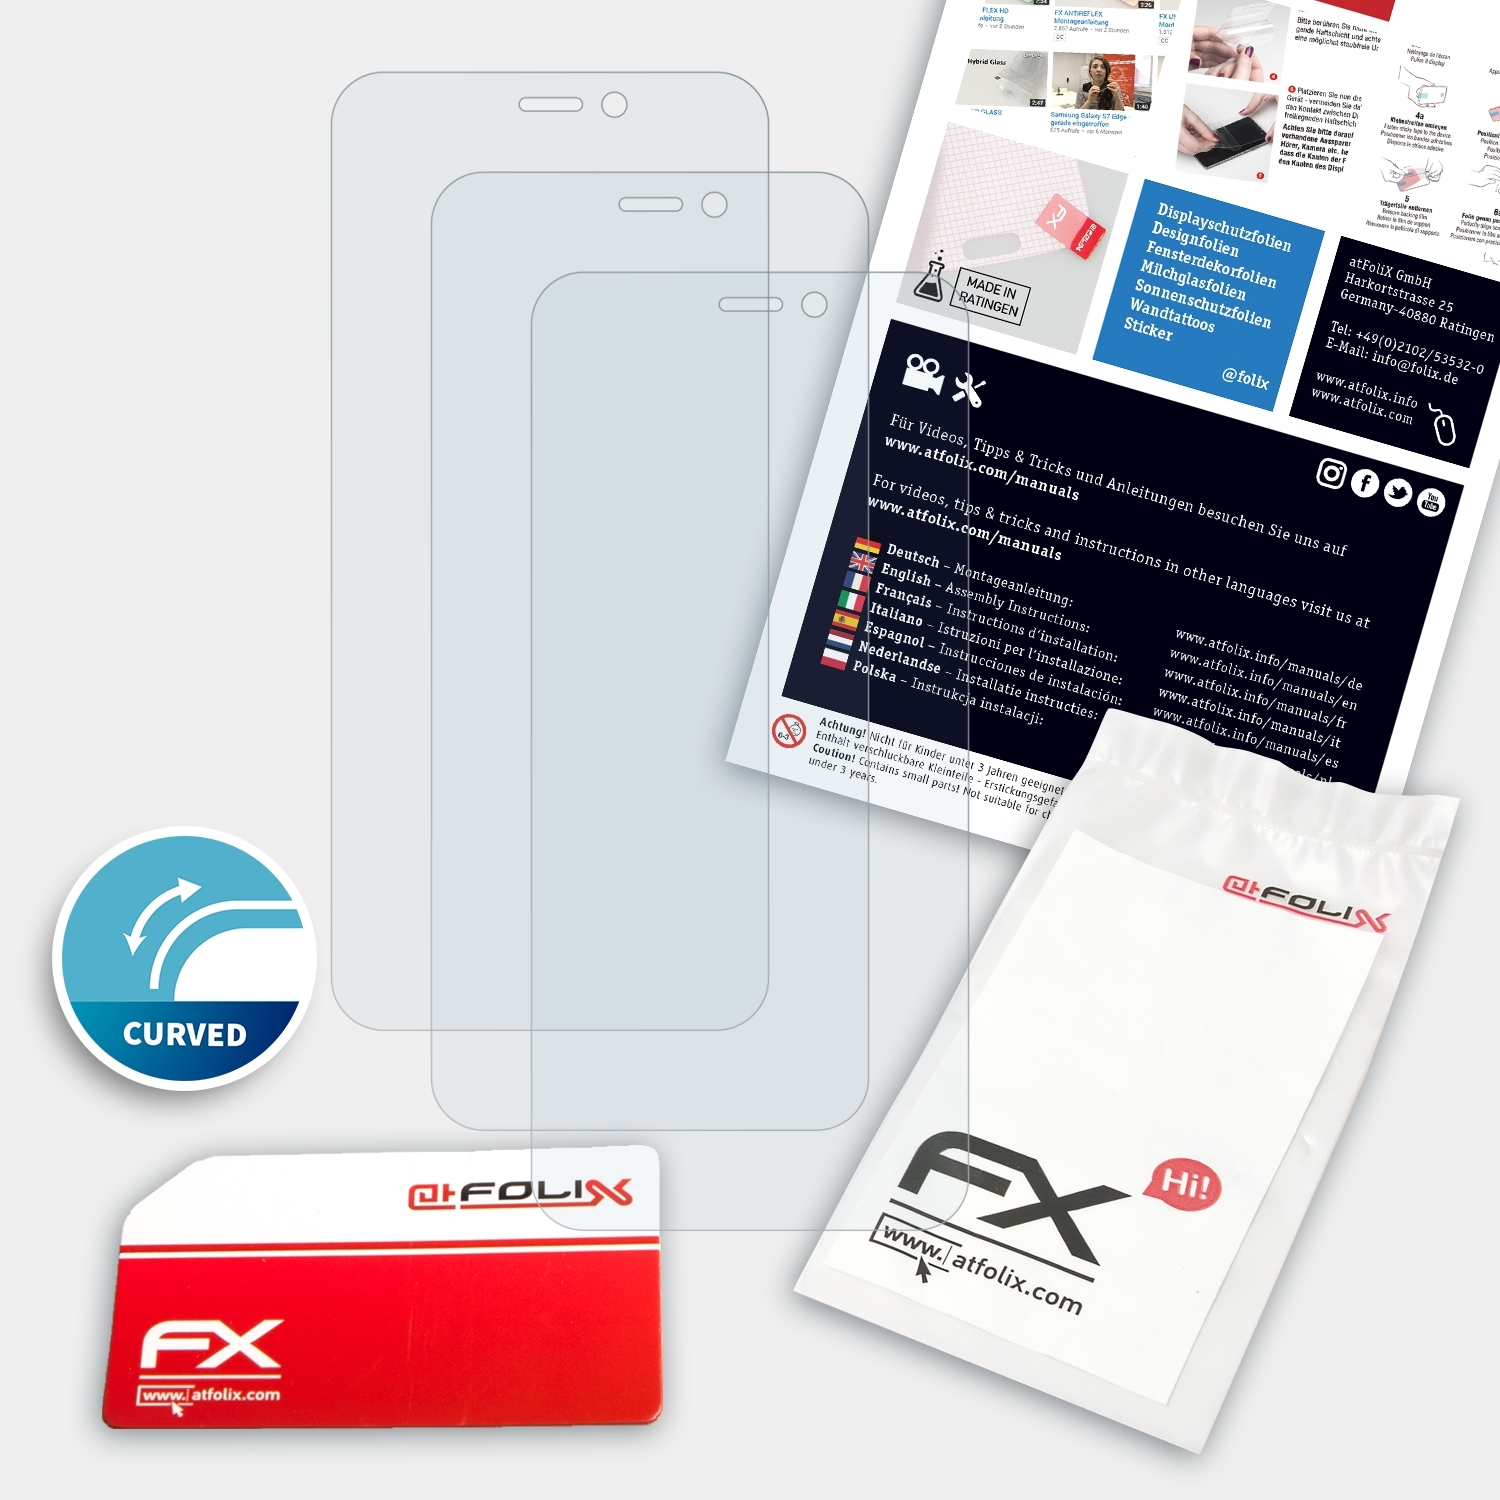 ATFOLIX 3x FX-ActiFleX Displayschutz(für N10) Smart Vodafone